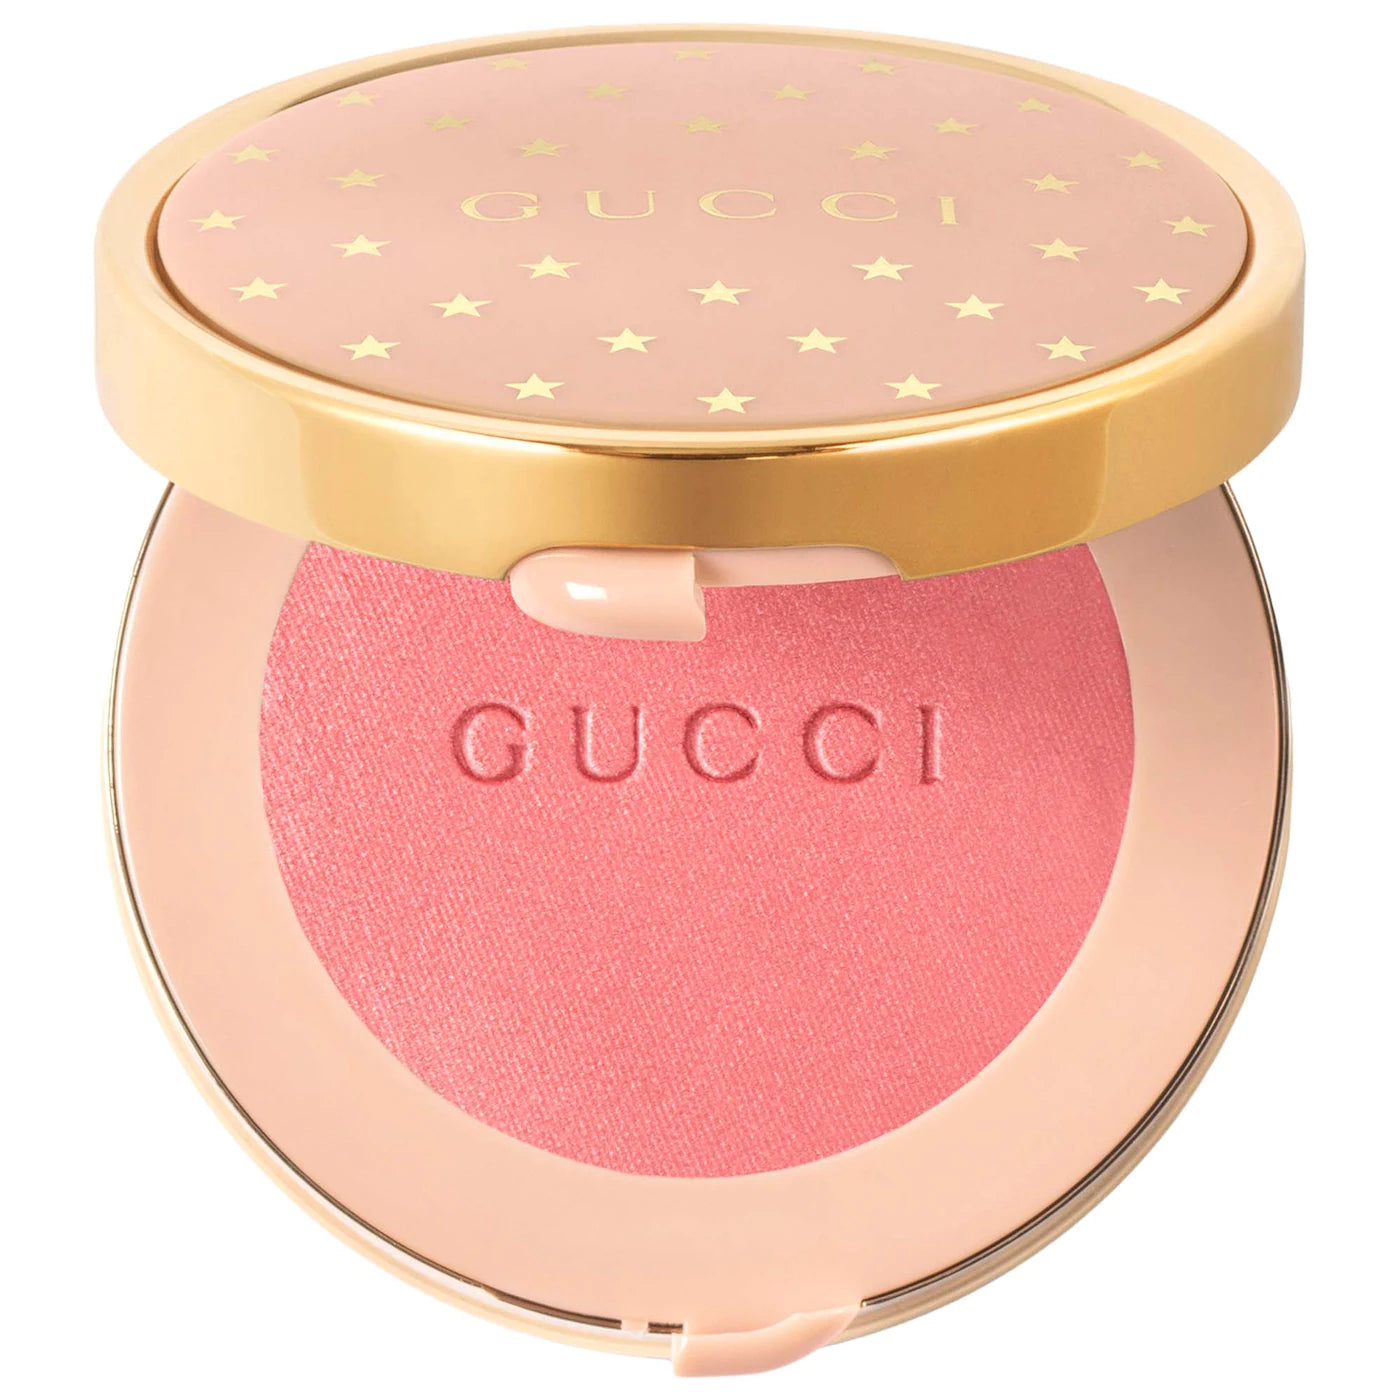 03 Radiant Pink Luminous Matte Beauty Blush - GUCCI